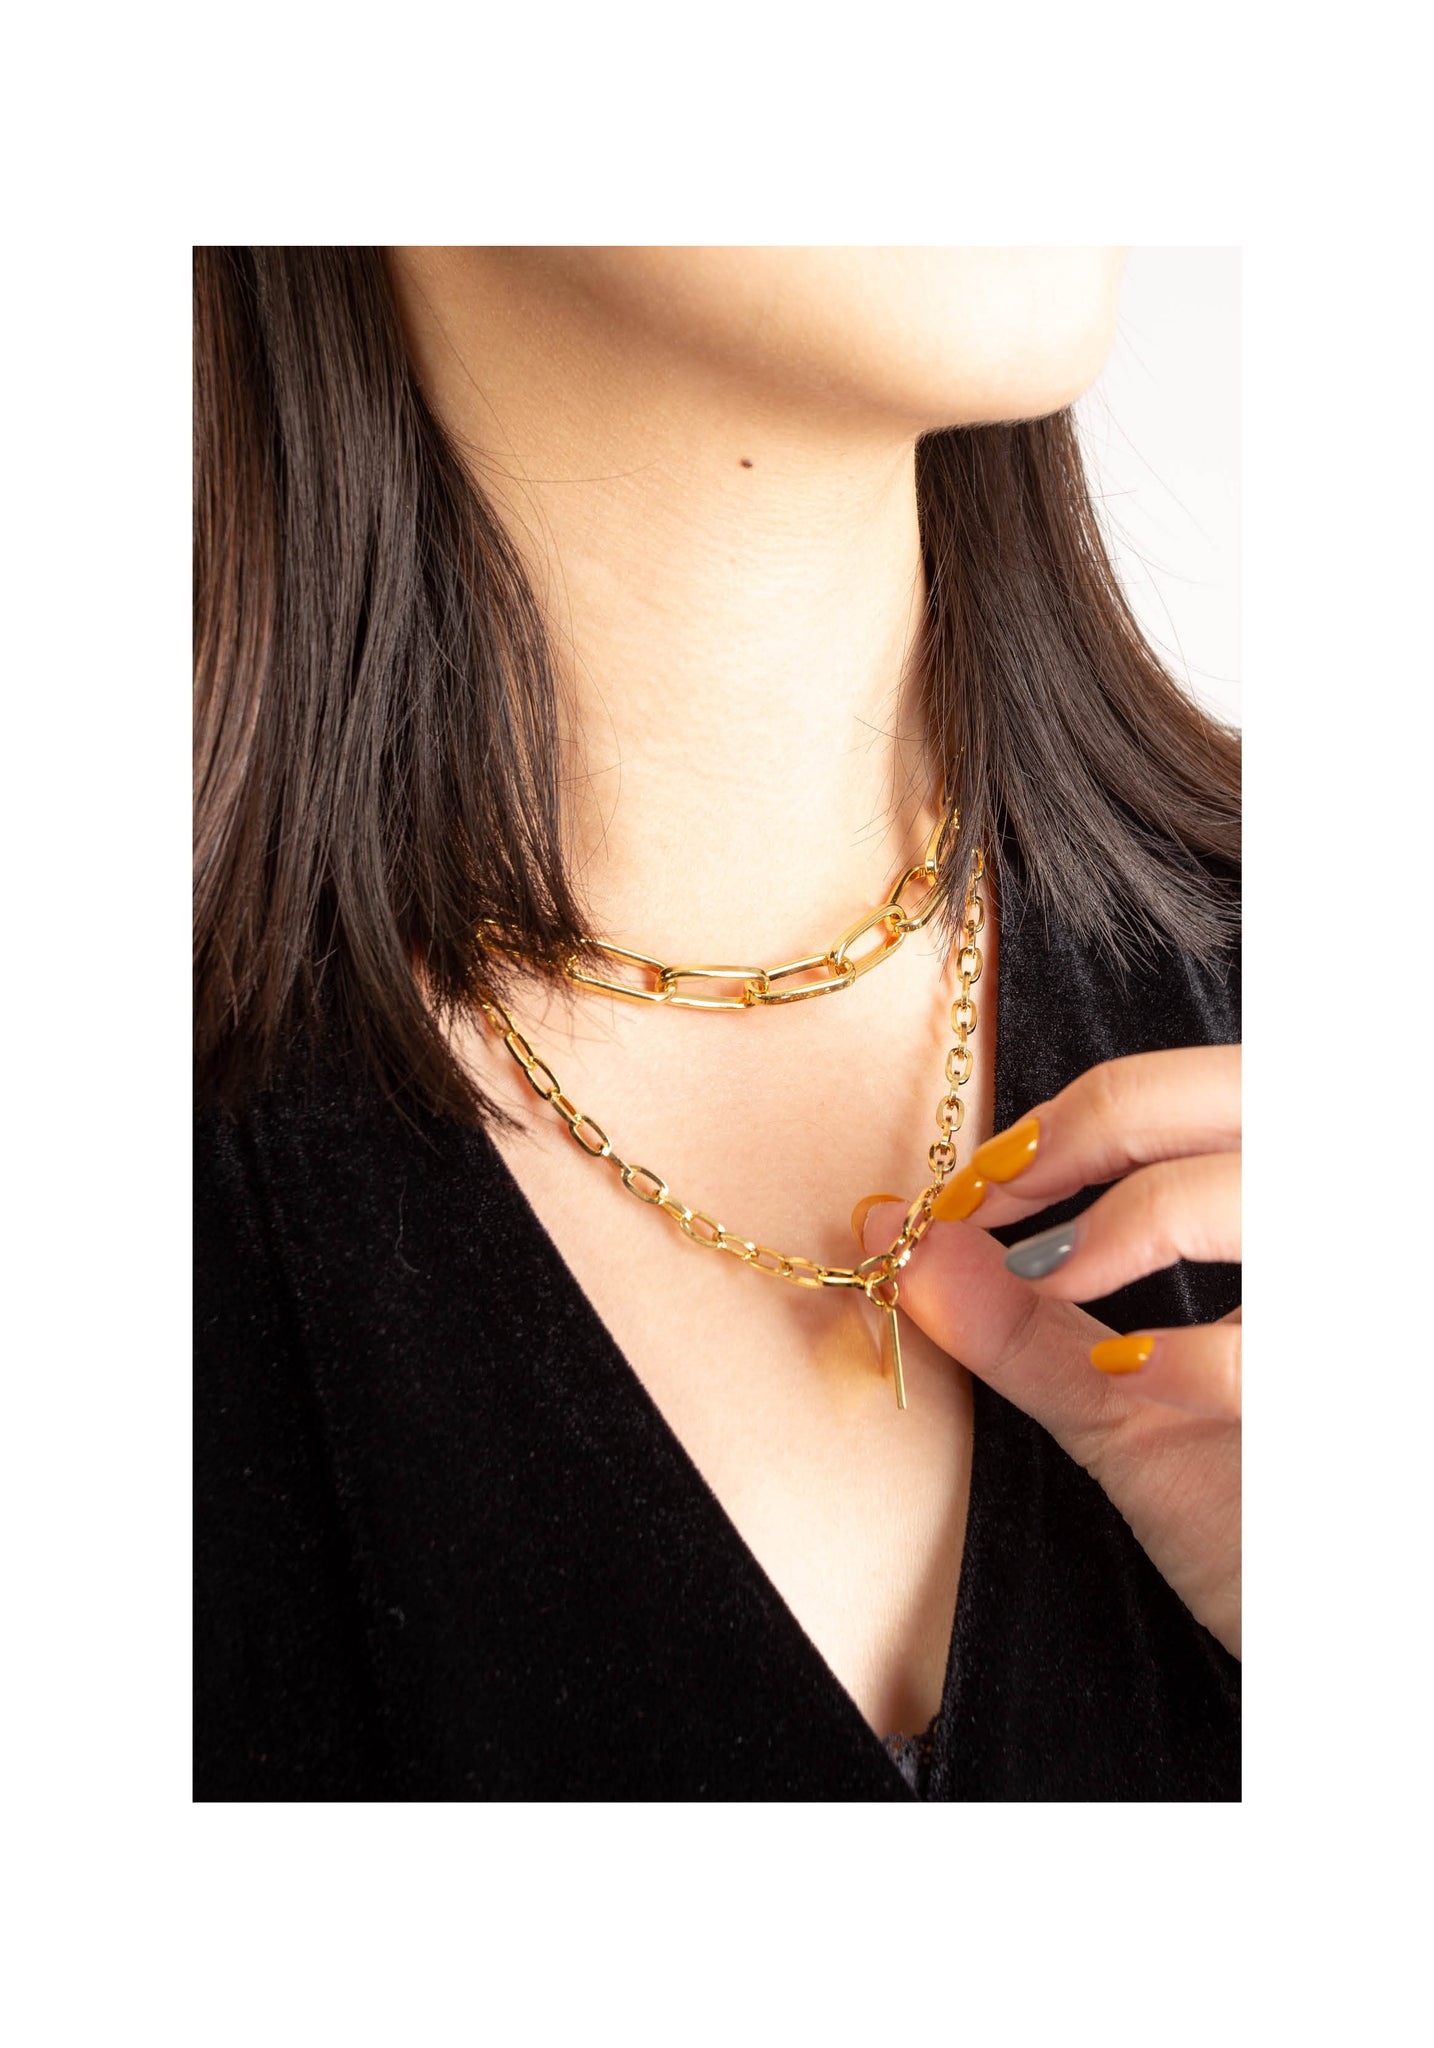 Double Chain Square Pendant Necklace Gold - whoami